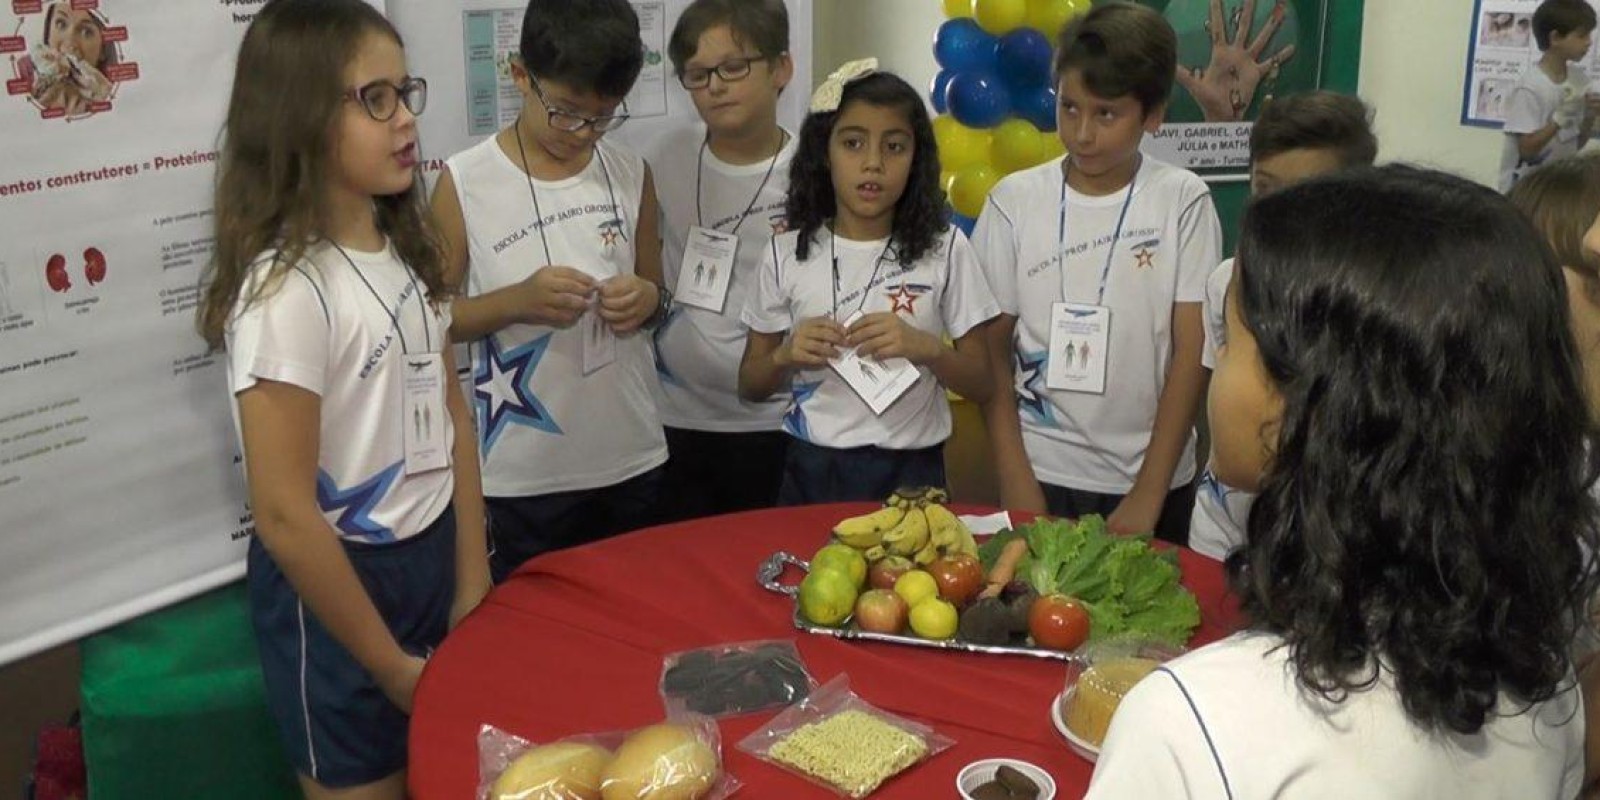 Alimentação saudável para crianças através da Escola